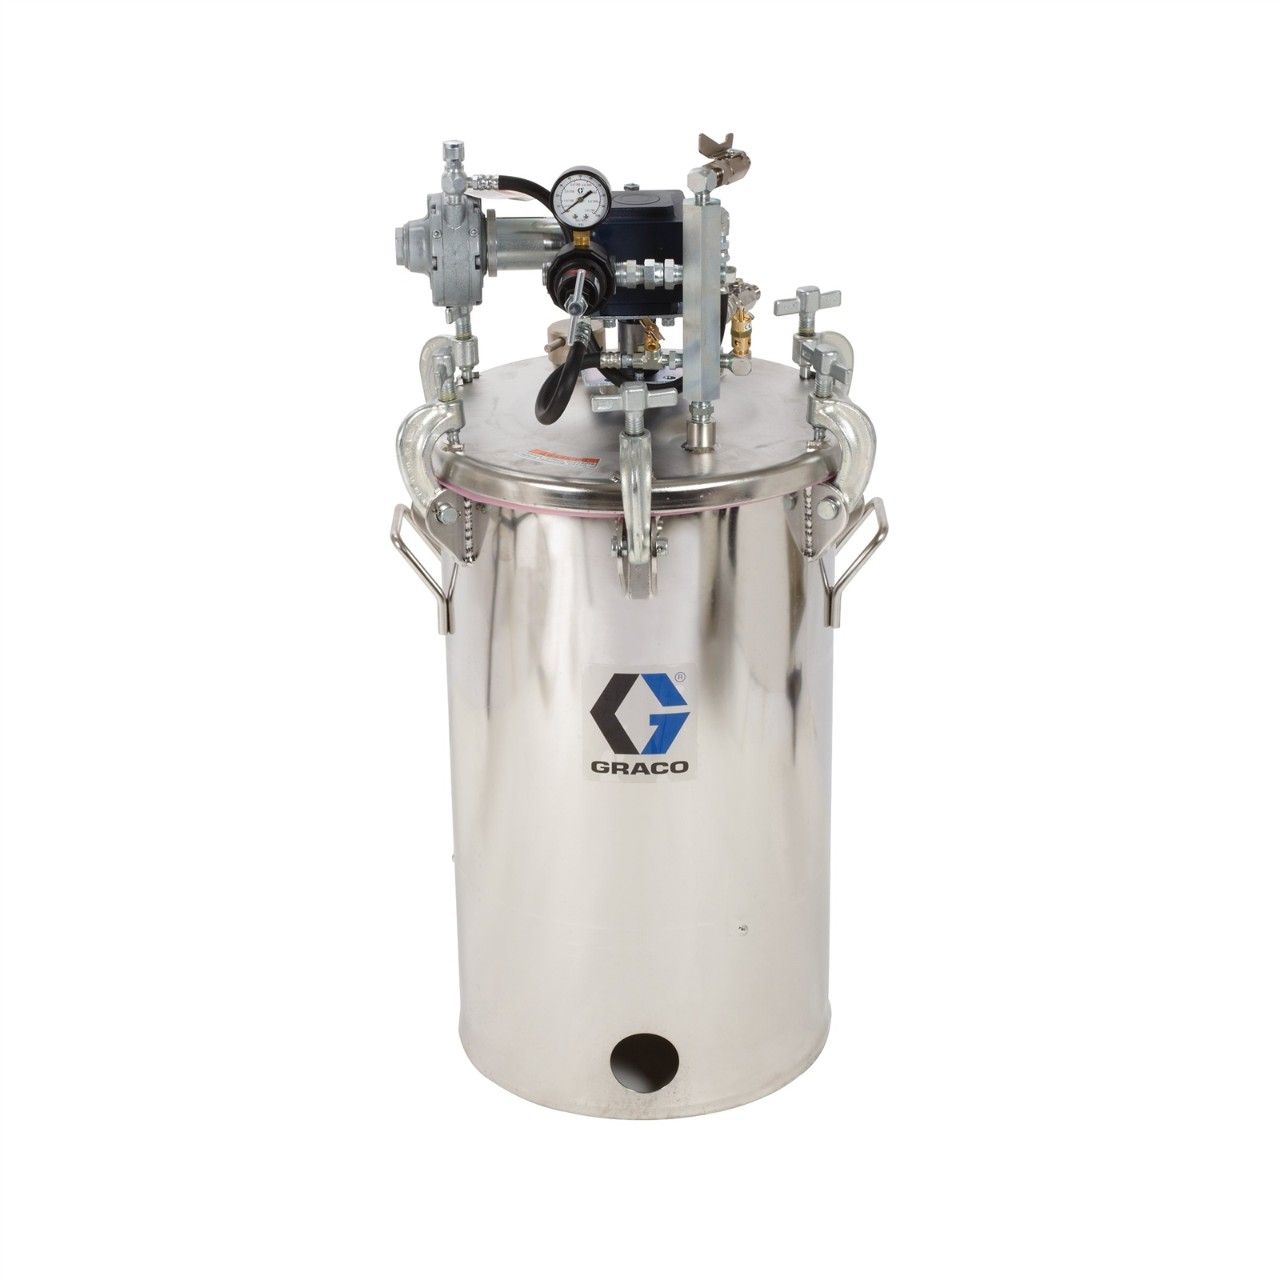 GRACO 10-Gallonen-Niederdruckbehälter (HVLP), Behälter mit Rührwerk - 236147